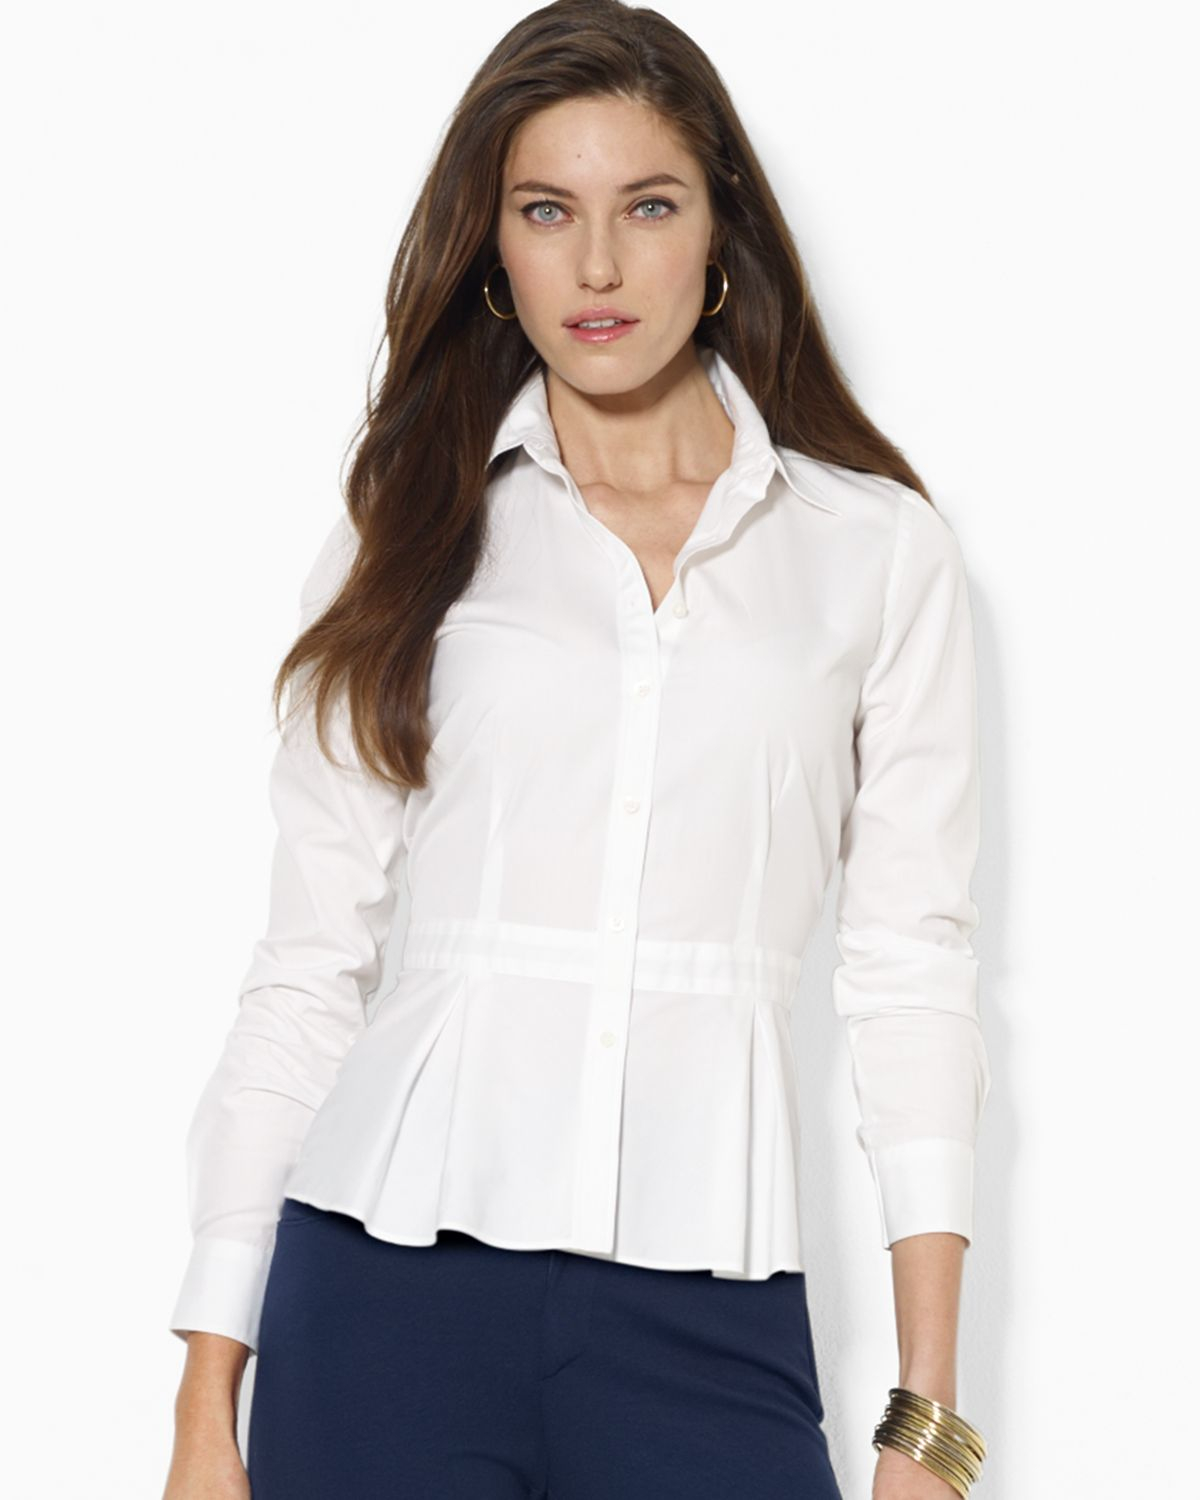 Lyst - Ralph lauren Lauren Peplum Button Front Shirt in White